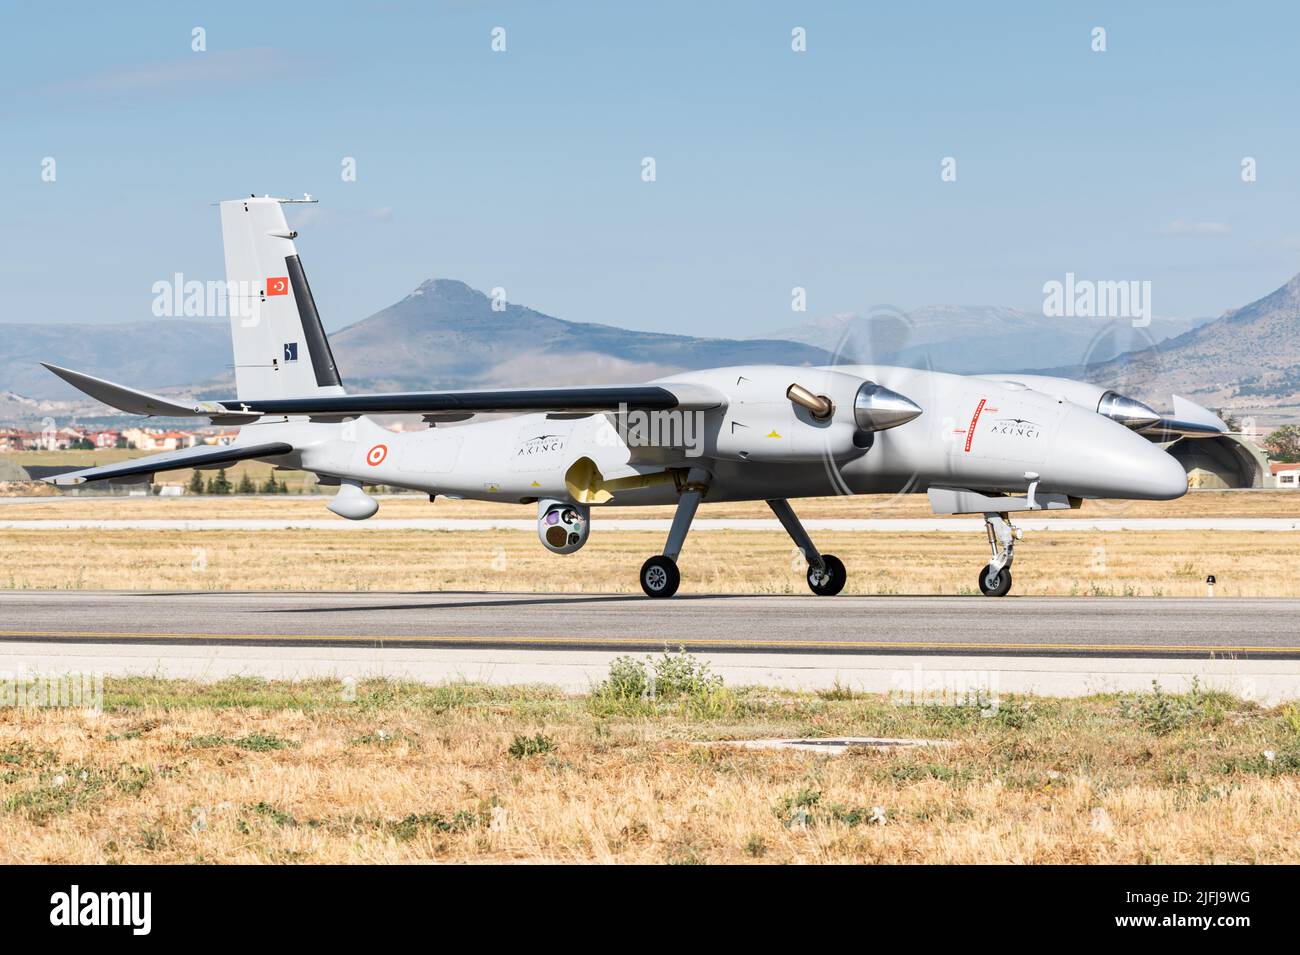 El Baykar Bayraktar Akıncı Vehículo Aéreo de Combate No tripulado (UCAV) de la Fuerza Aérea de Turquía. Foto de stock